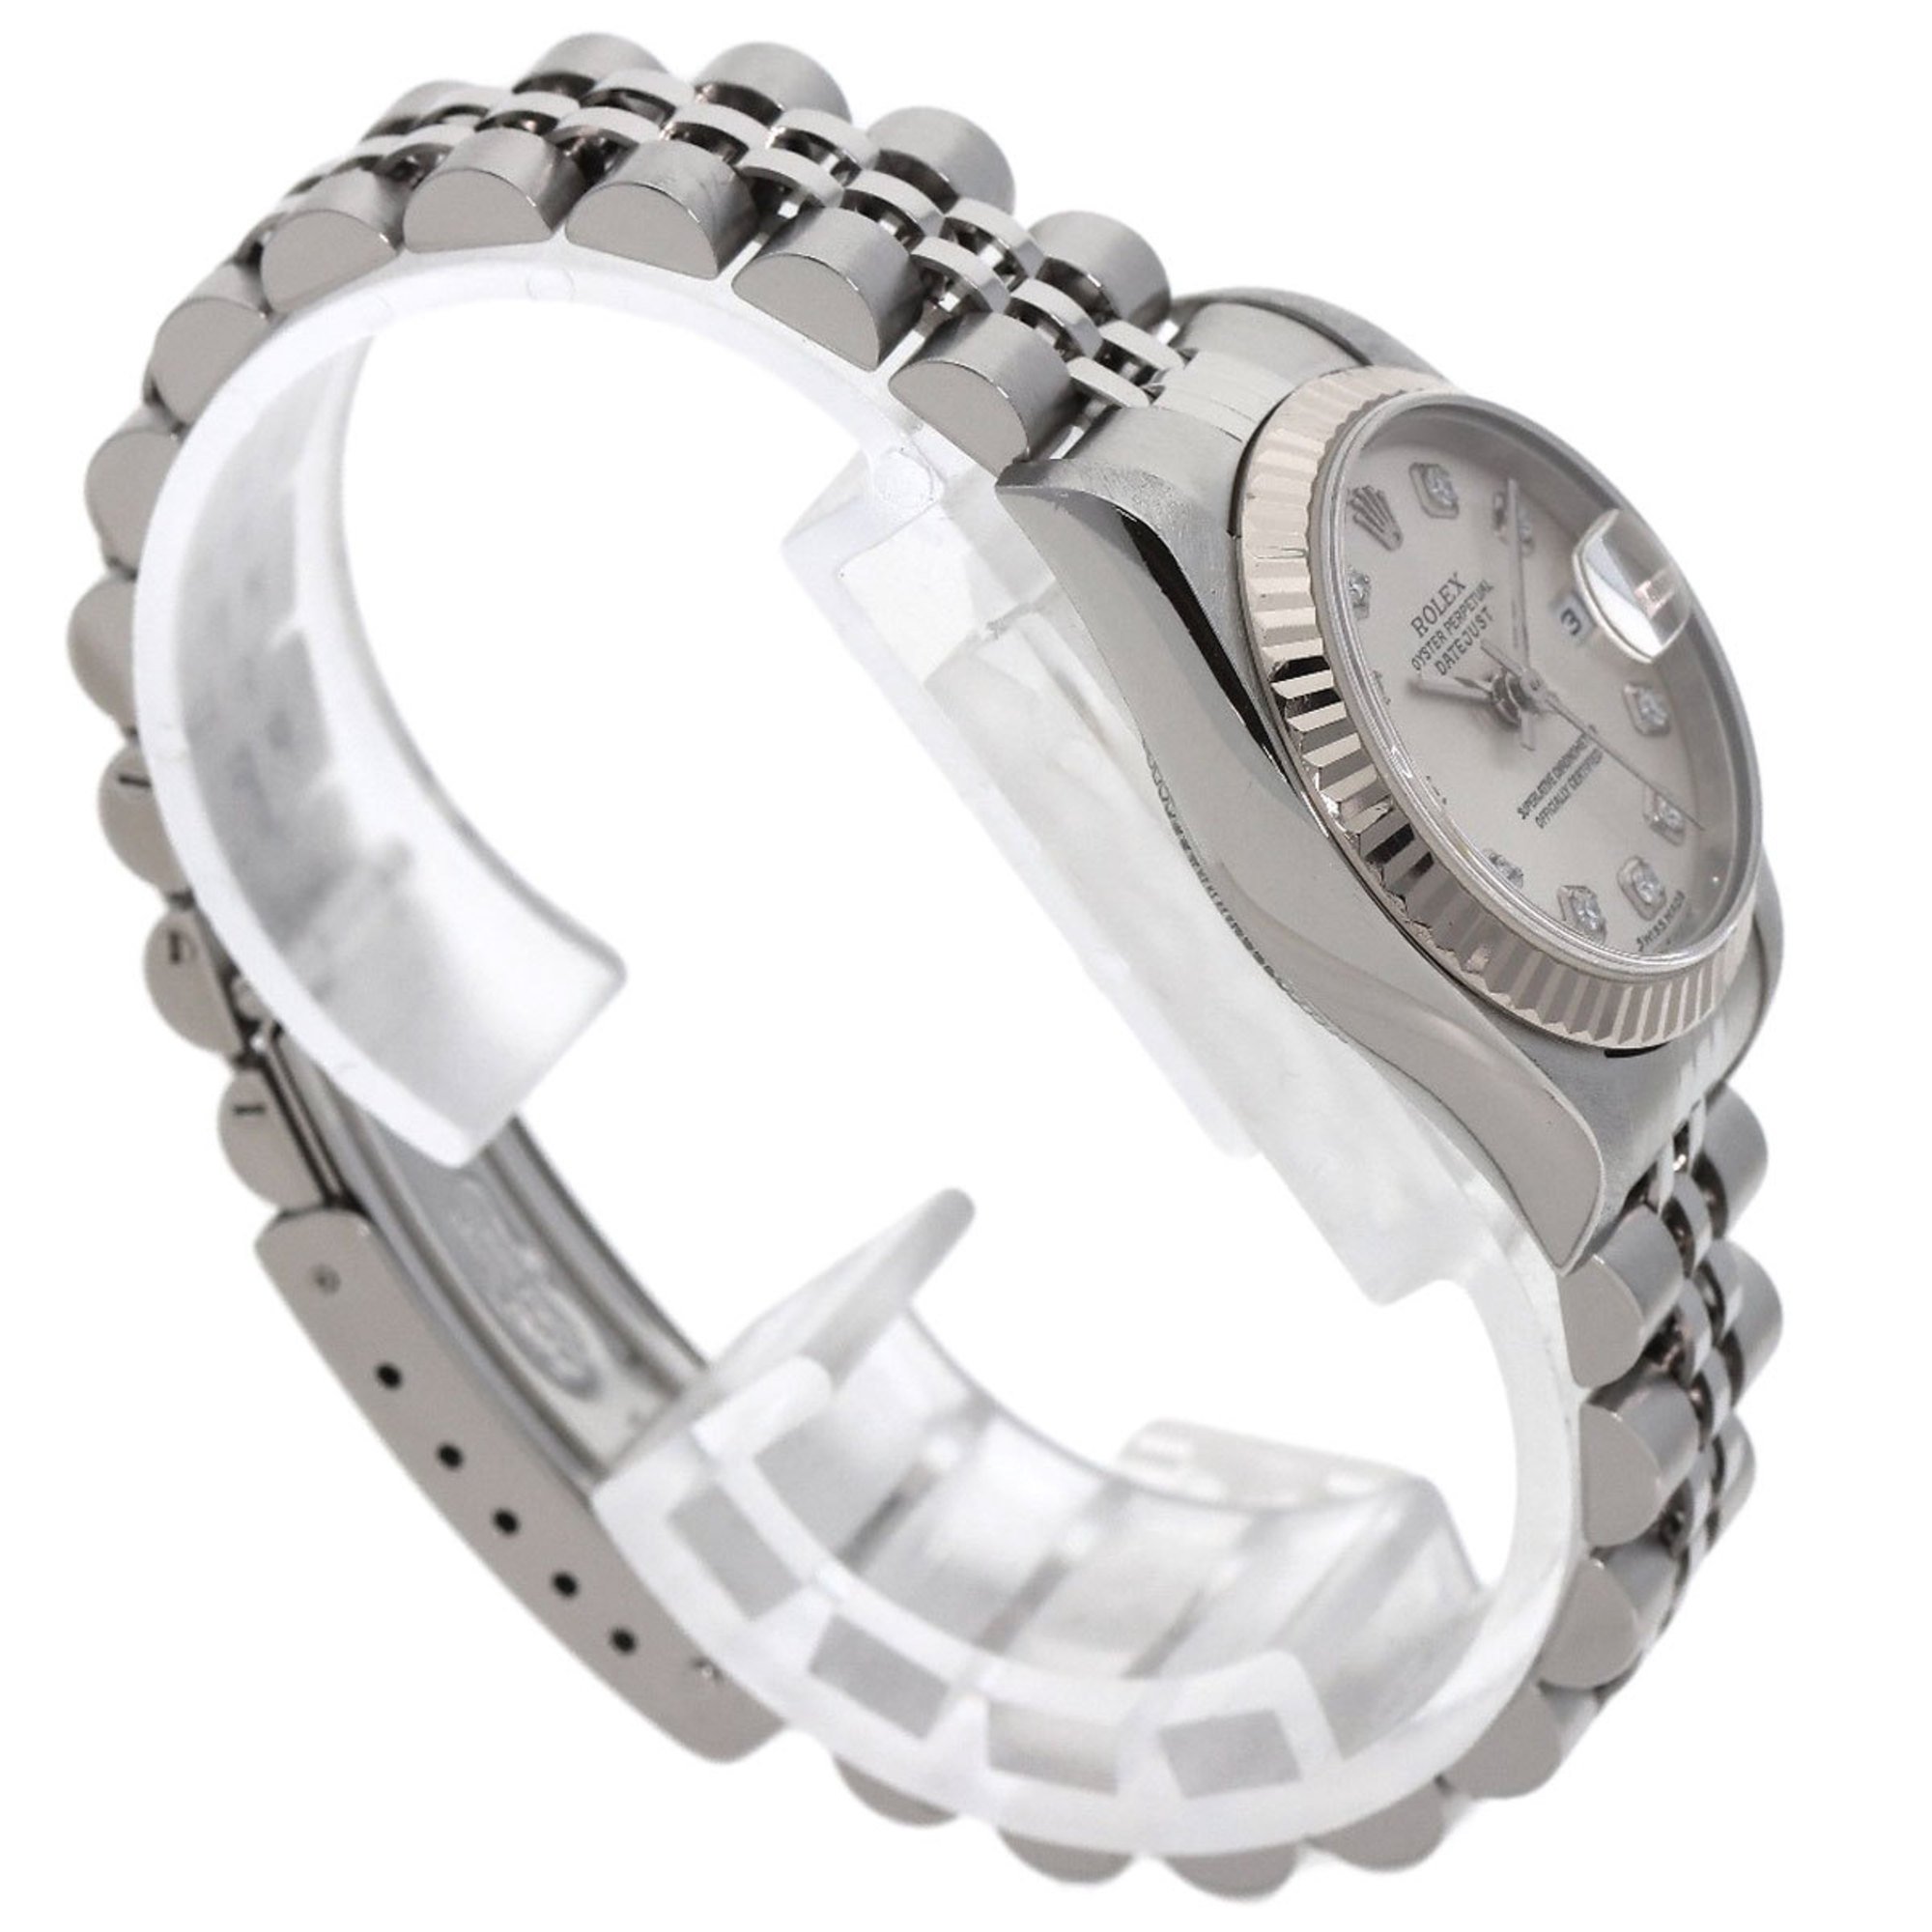 Rolex 79174G Datejust 10P Diamond Watch Stainless Steel/SS/K18WG Ladies ROLEX